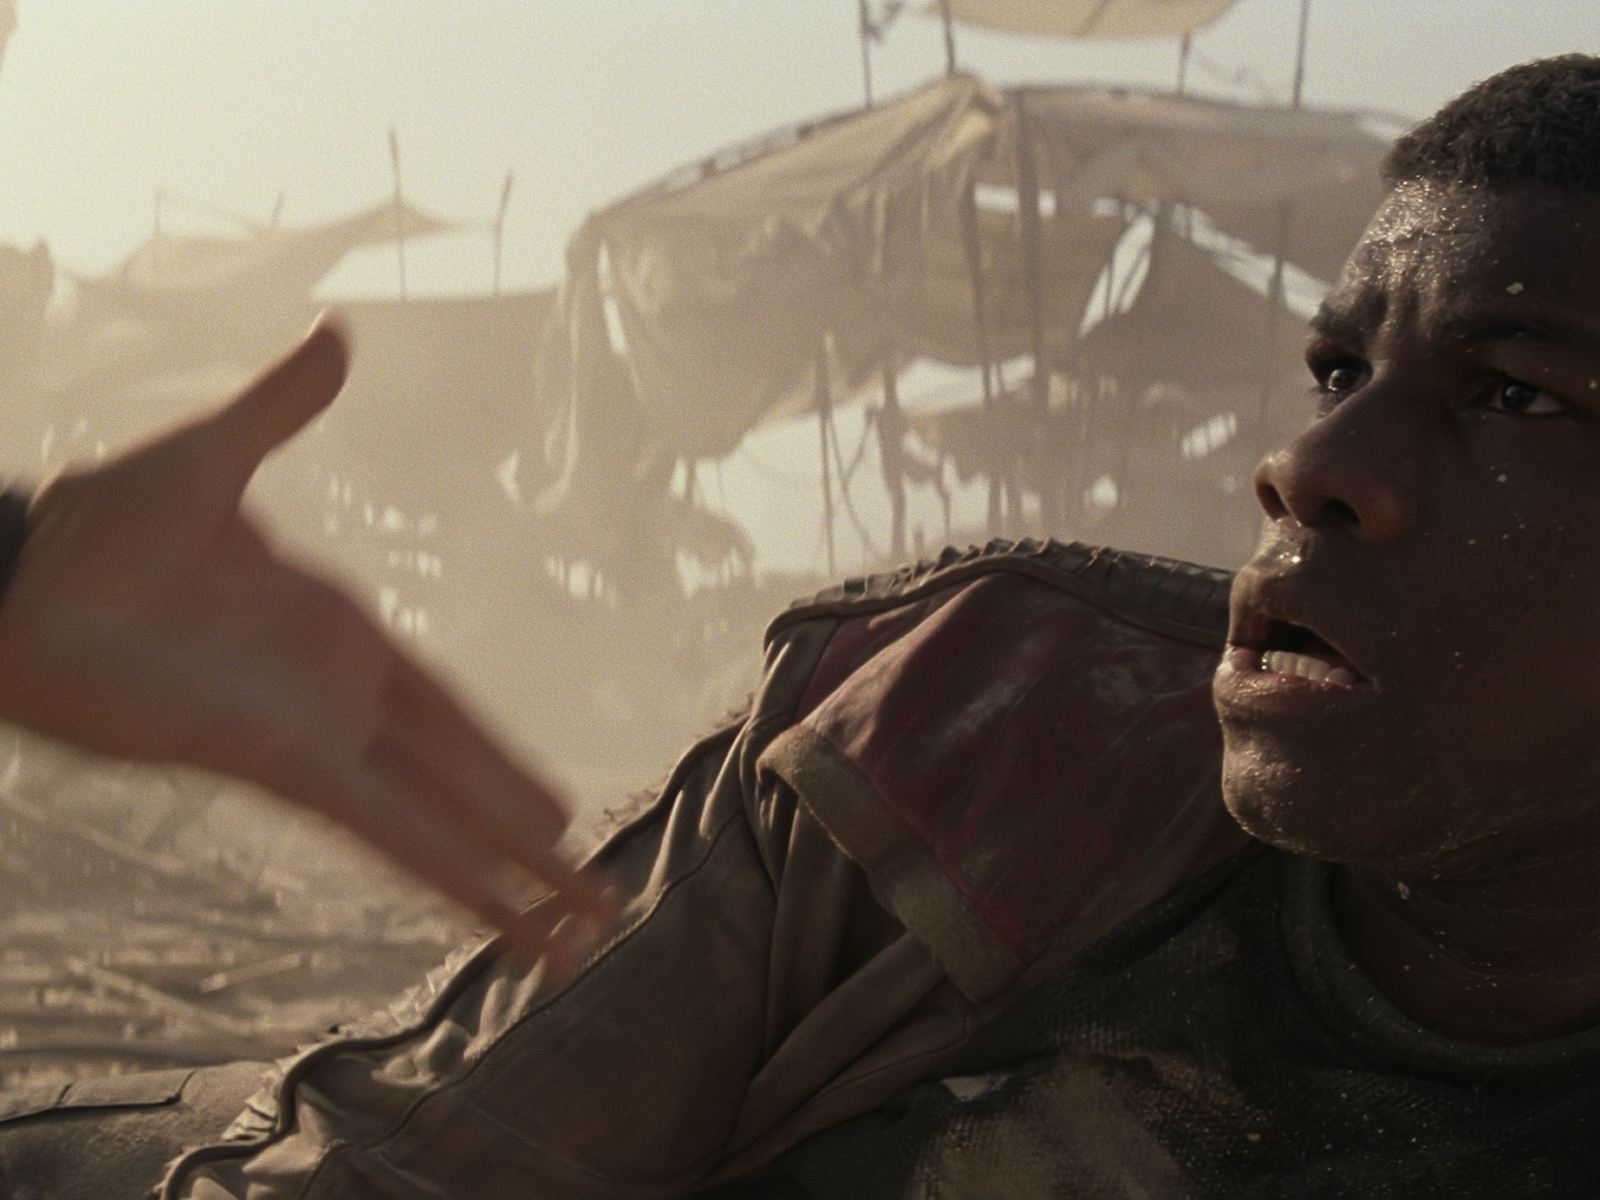 Star Wars The Force Awakens John Boyega for 1600 x 1200 resolution